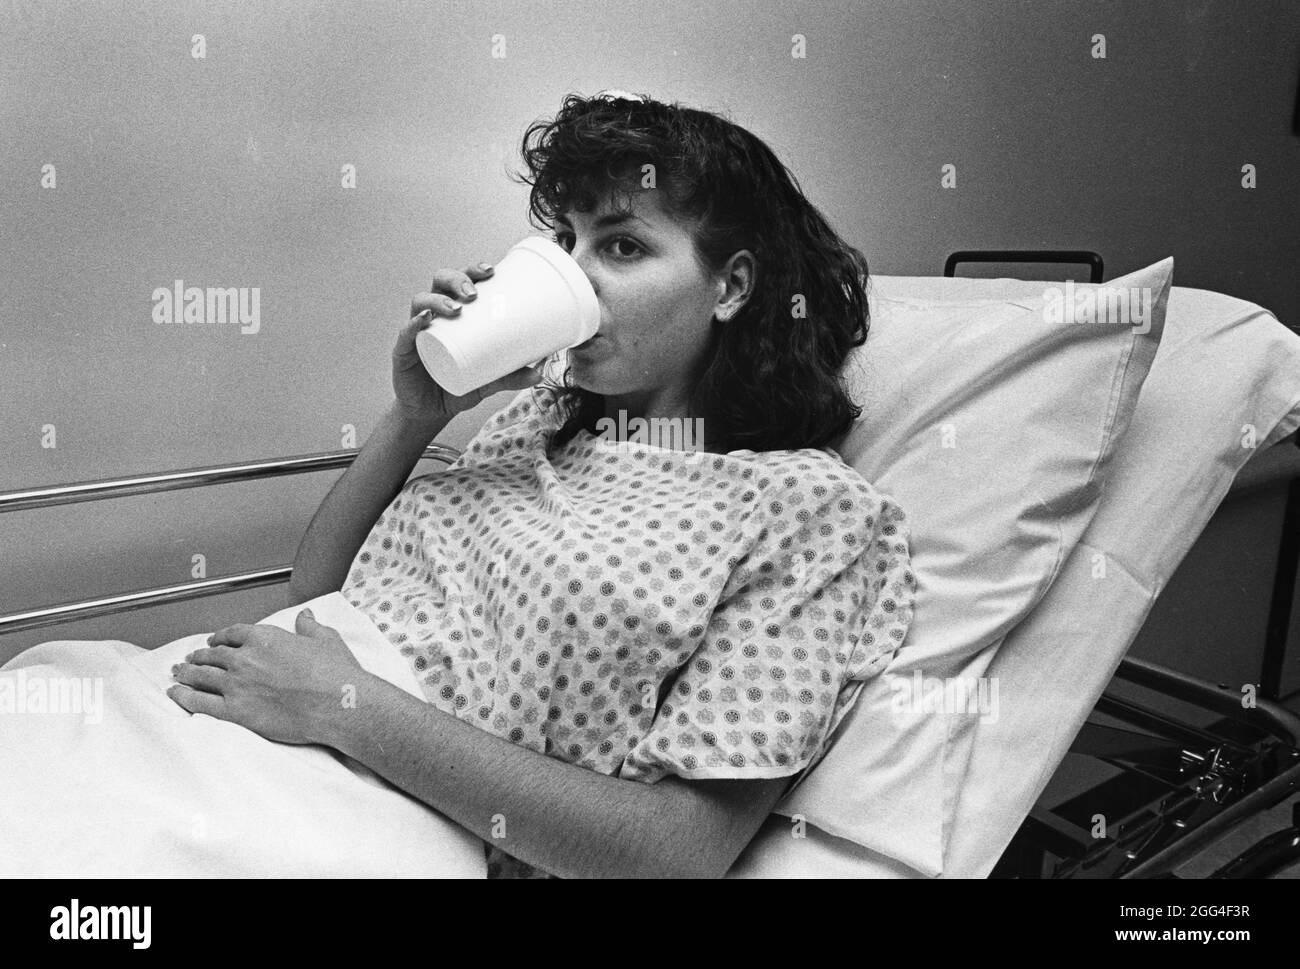 Austin Texas USA, vers 1990: Une patiente de l'hôpital boit de l'eau pour évacuer les liquides d'essai utilisés pour les tests médicaux. ©Bob Daemmrich Banque D'Images